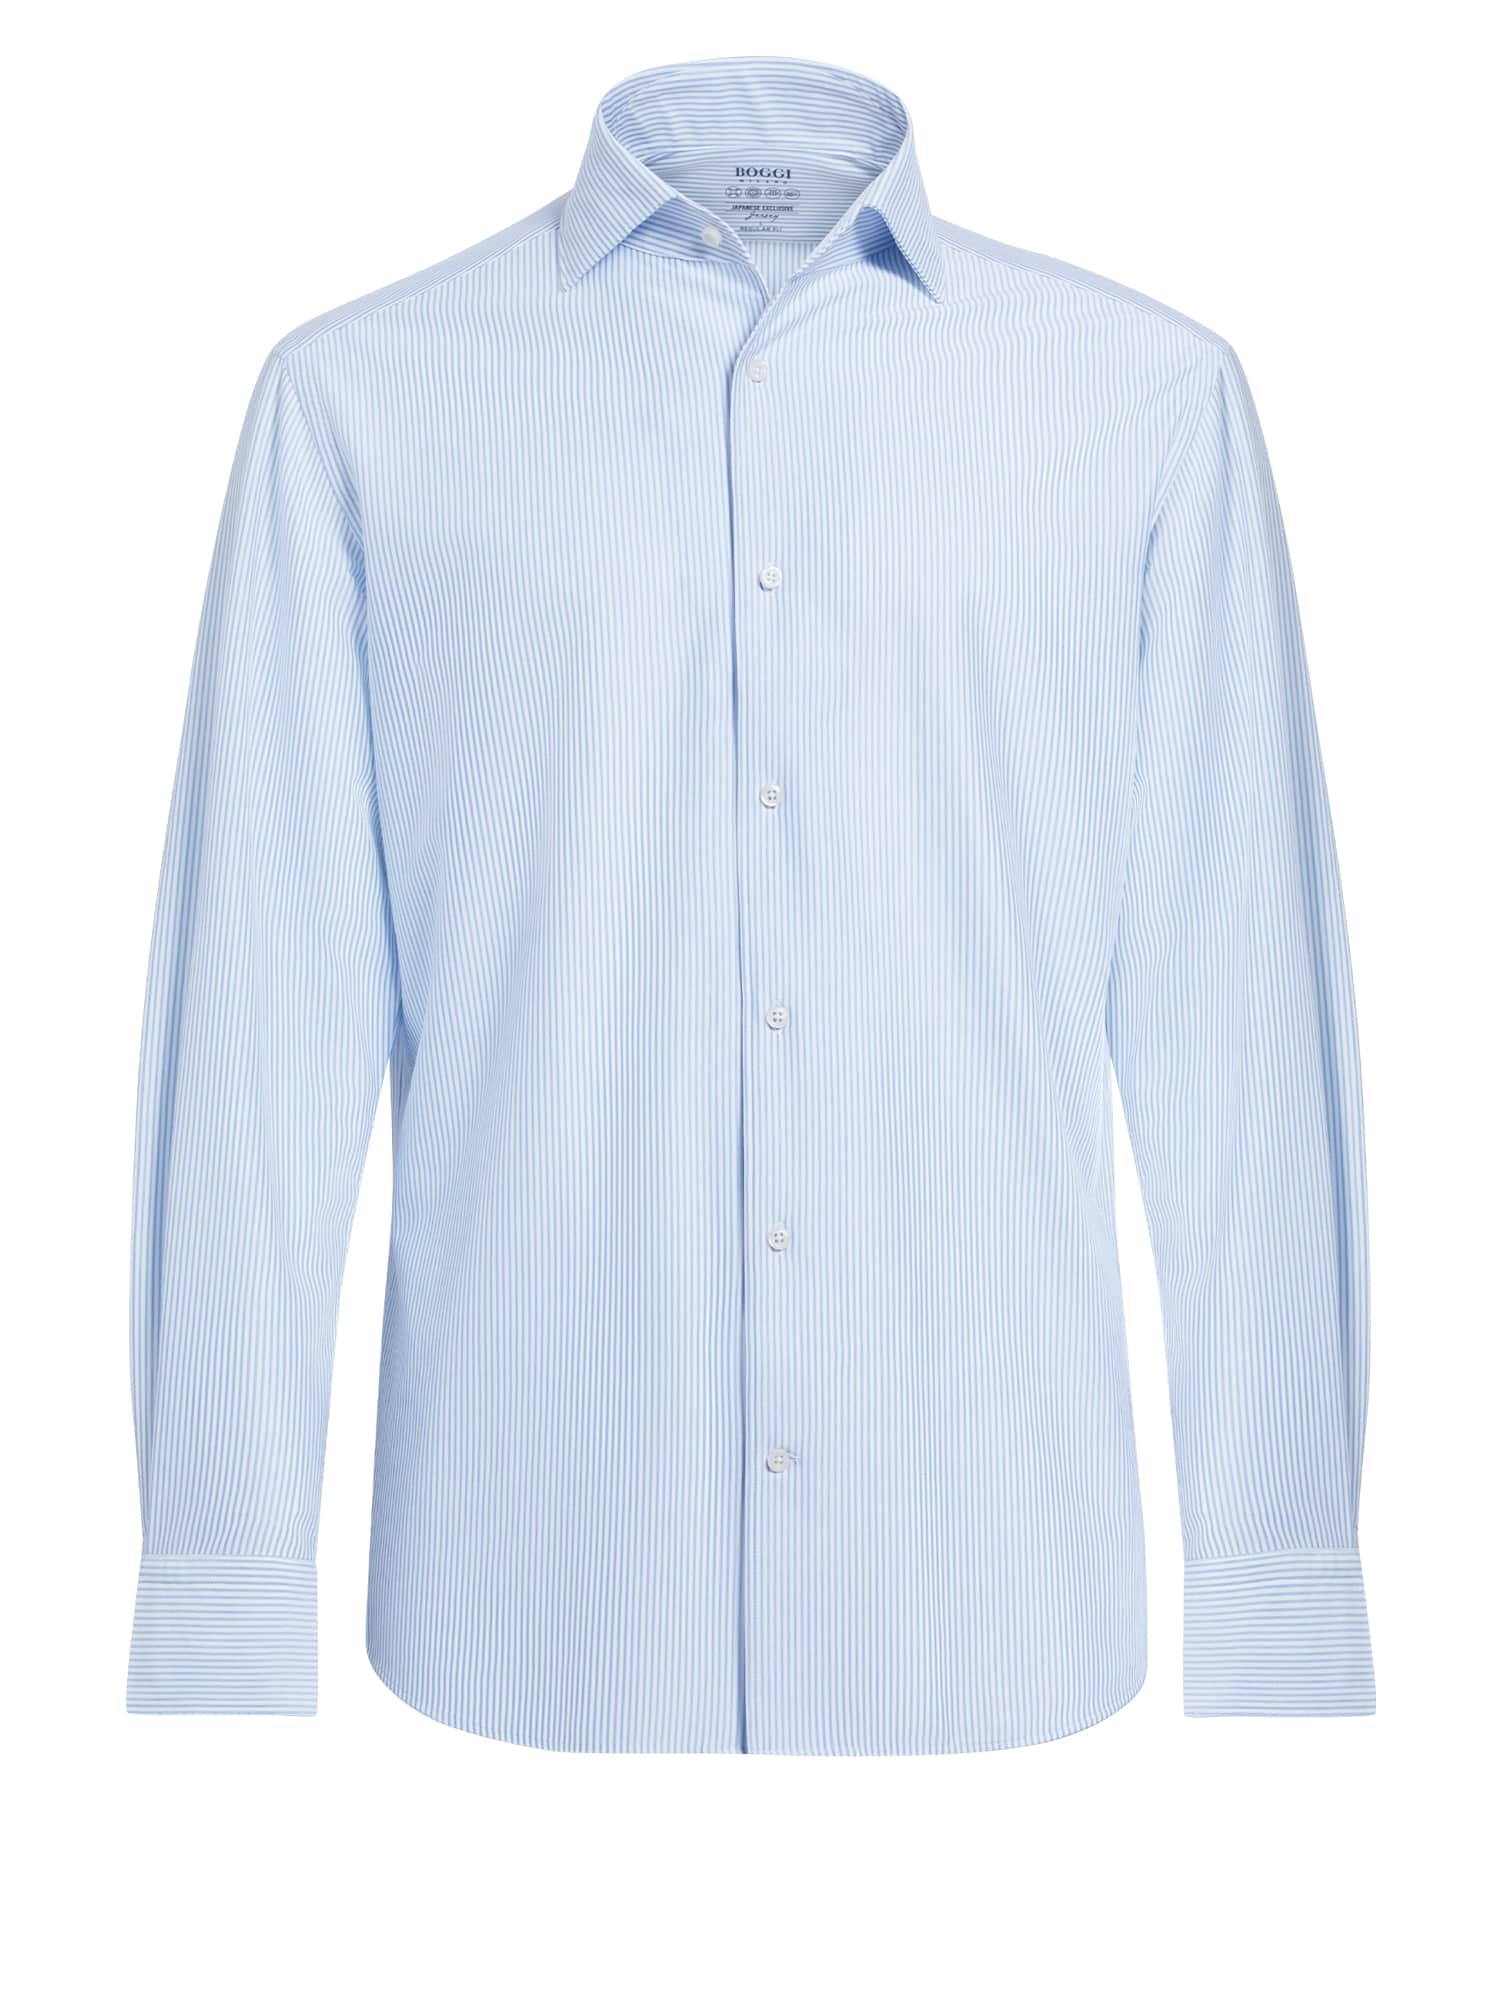 Abbigliamento gJwgH Boggi Milano Hemd in Blu Chiaro, Blu Pastello 